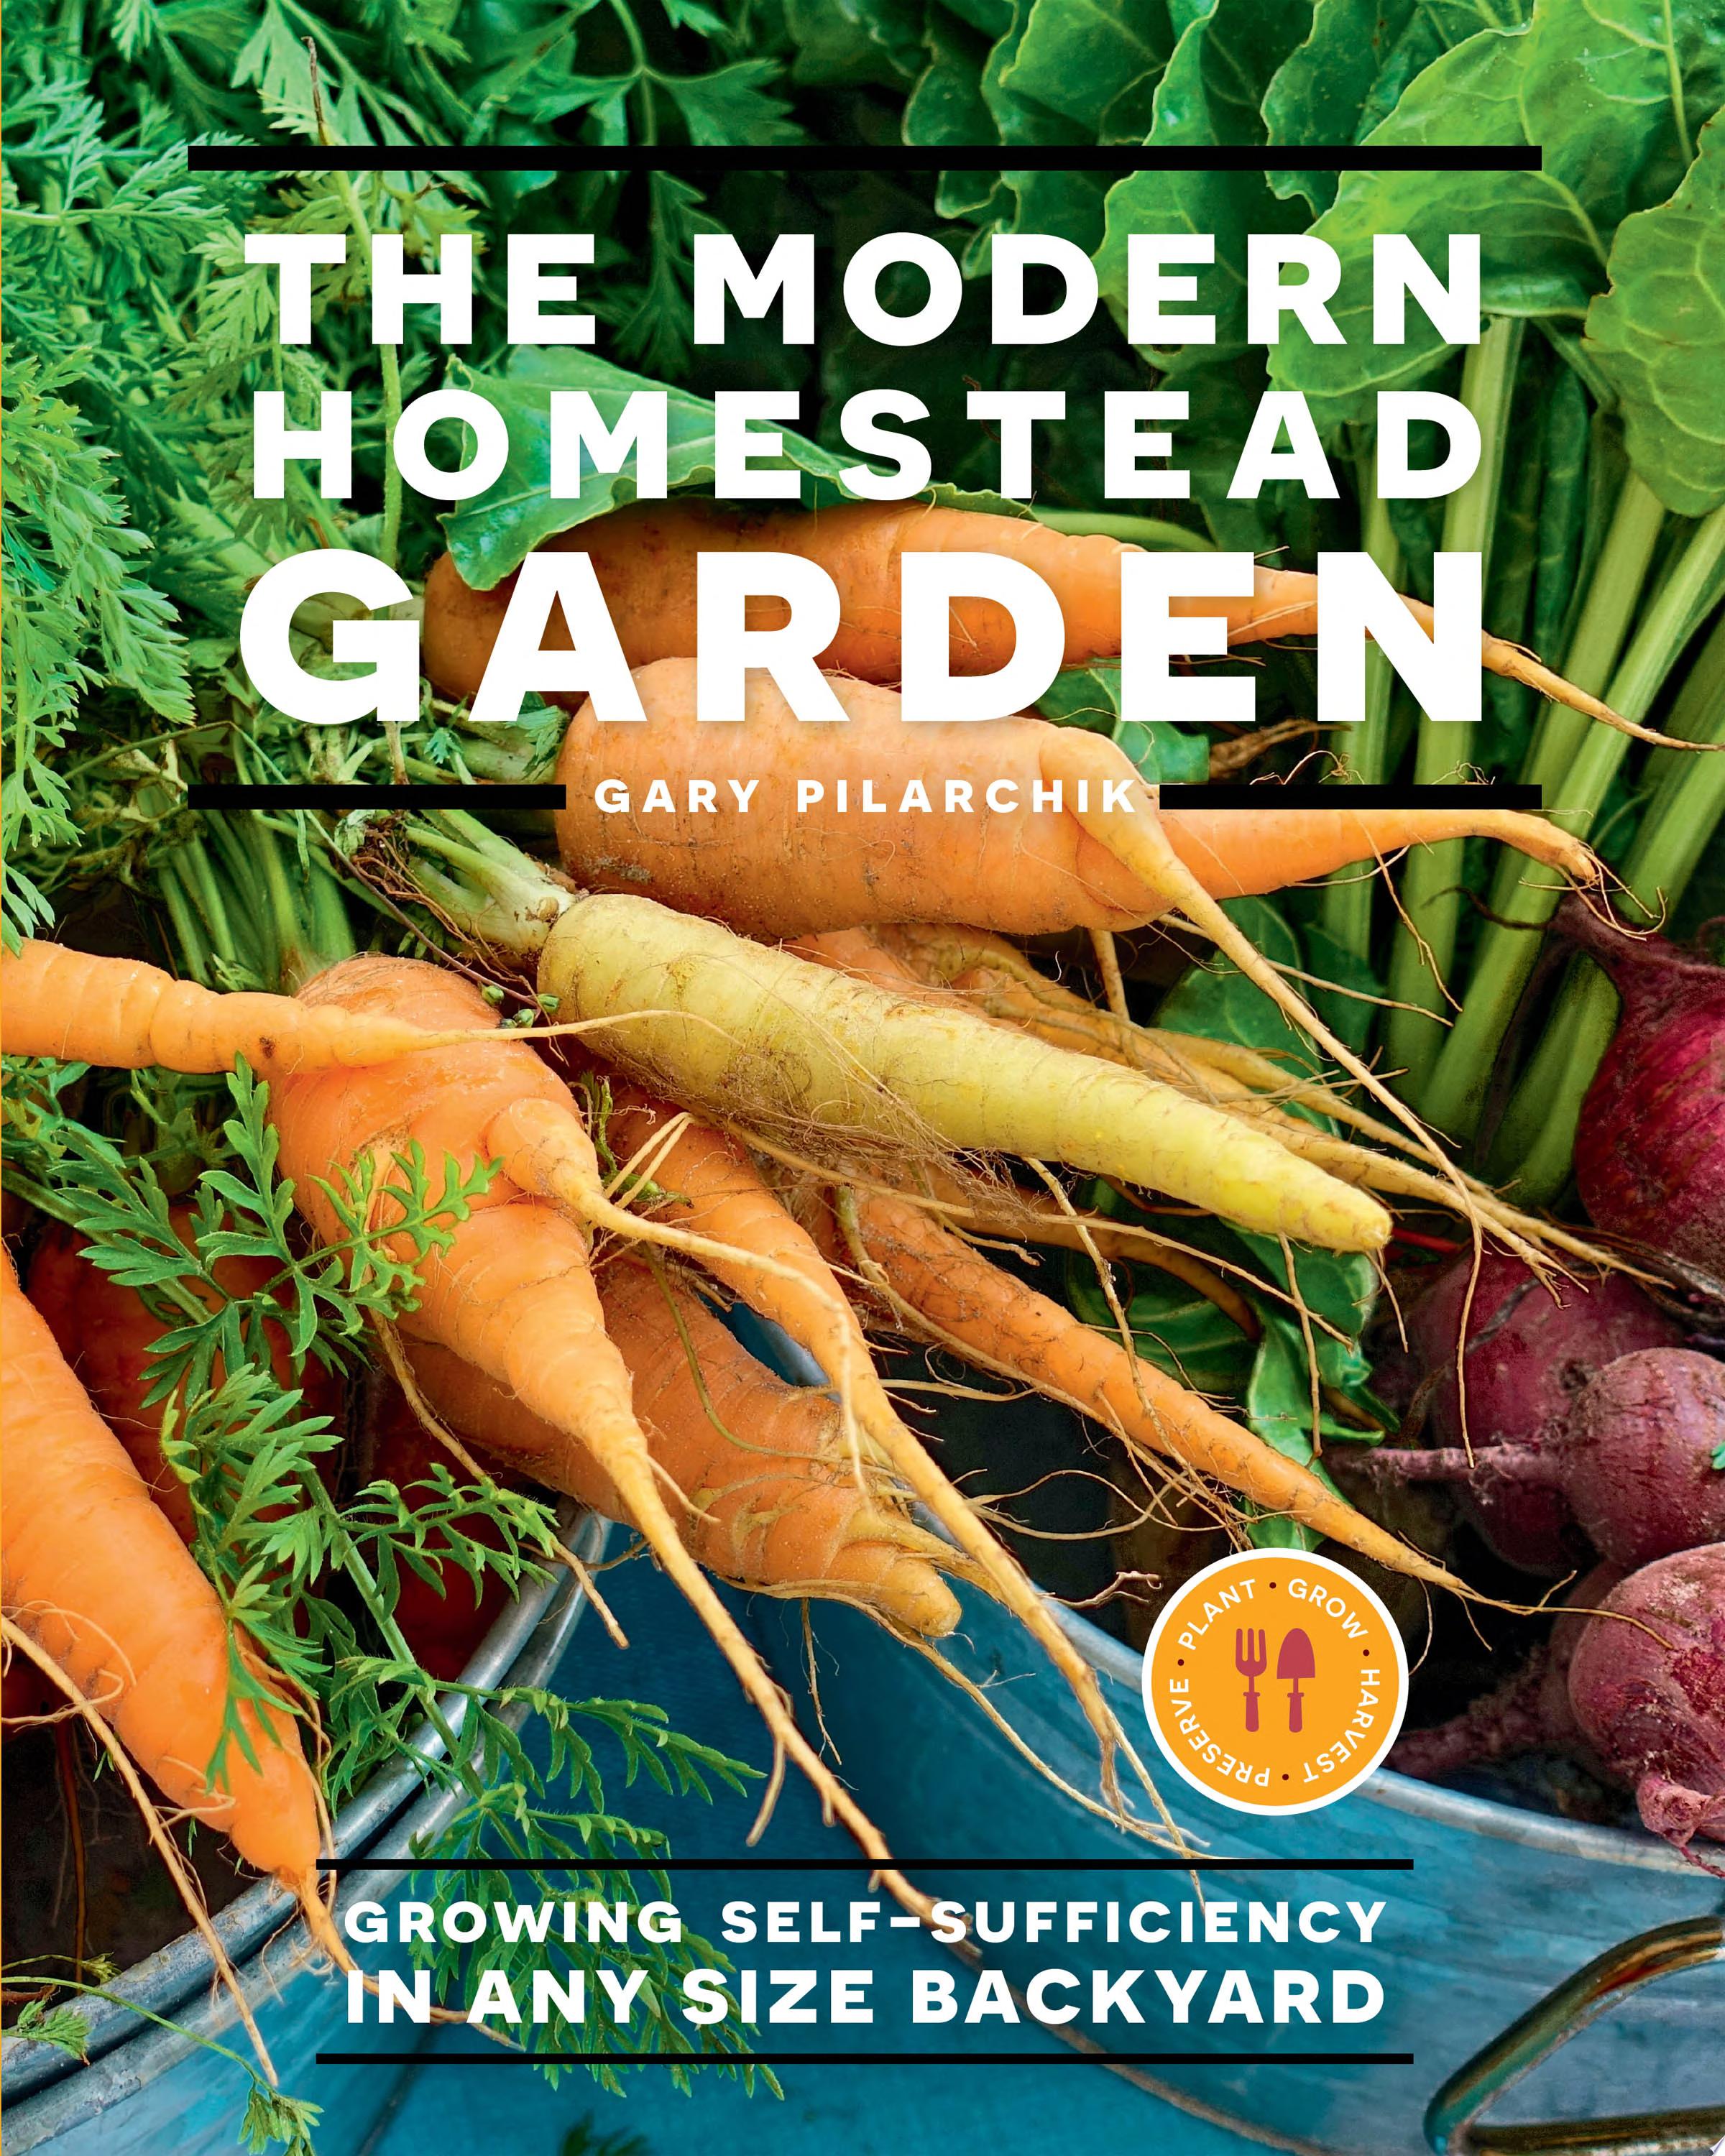 Image for "The Modern Homestead Garden"